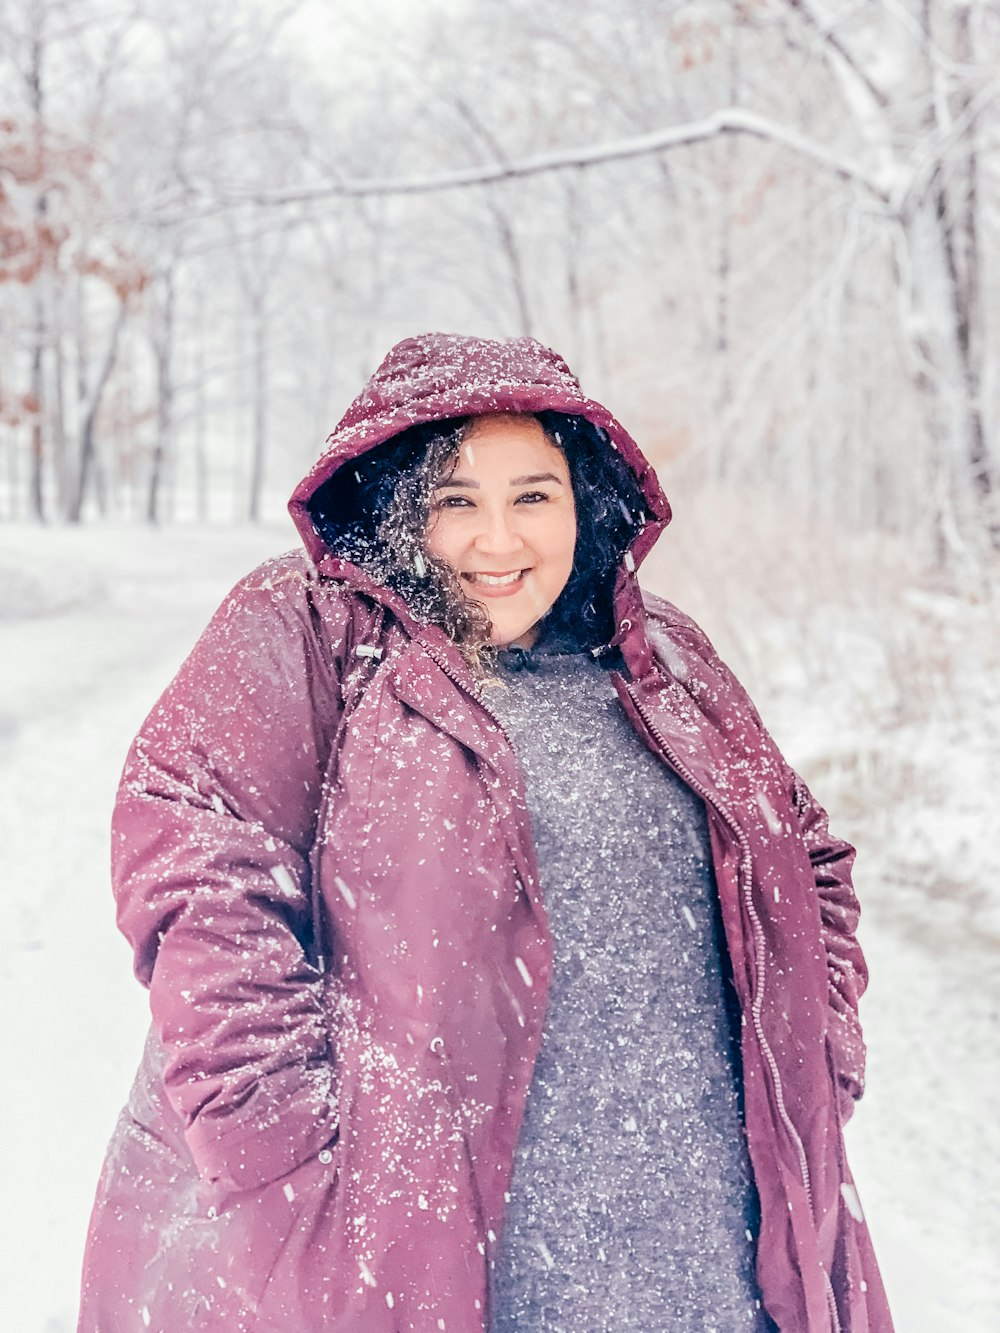 Frau im braunen Wintermantel tagsüber auf schneebedecktem Boden steht